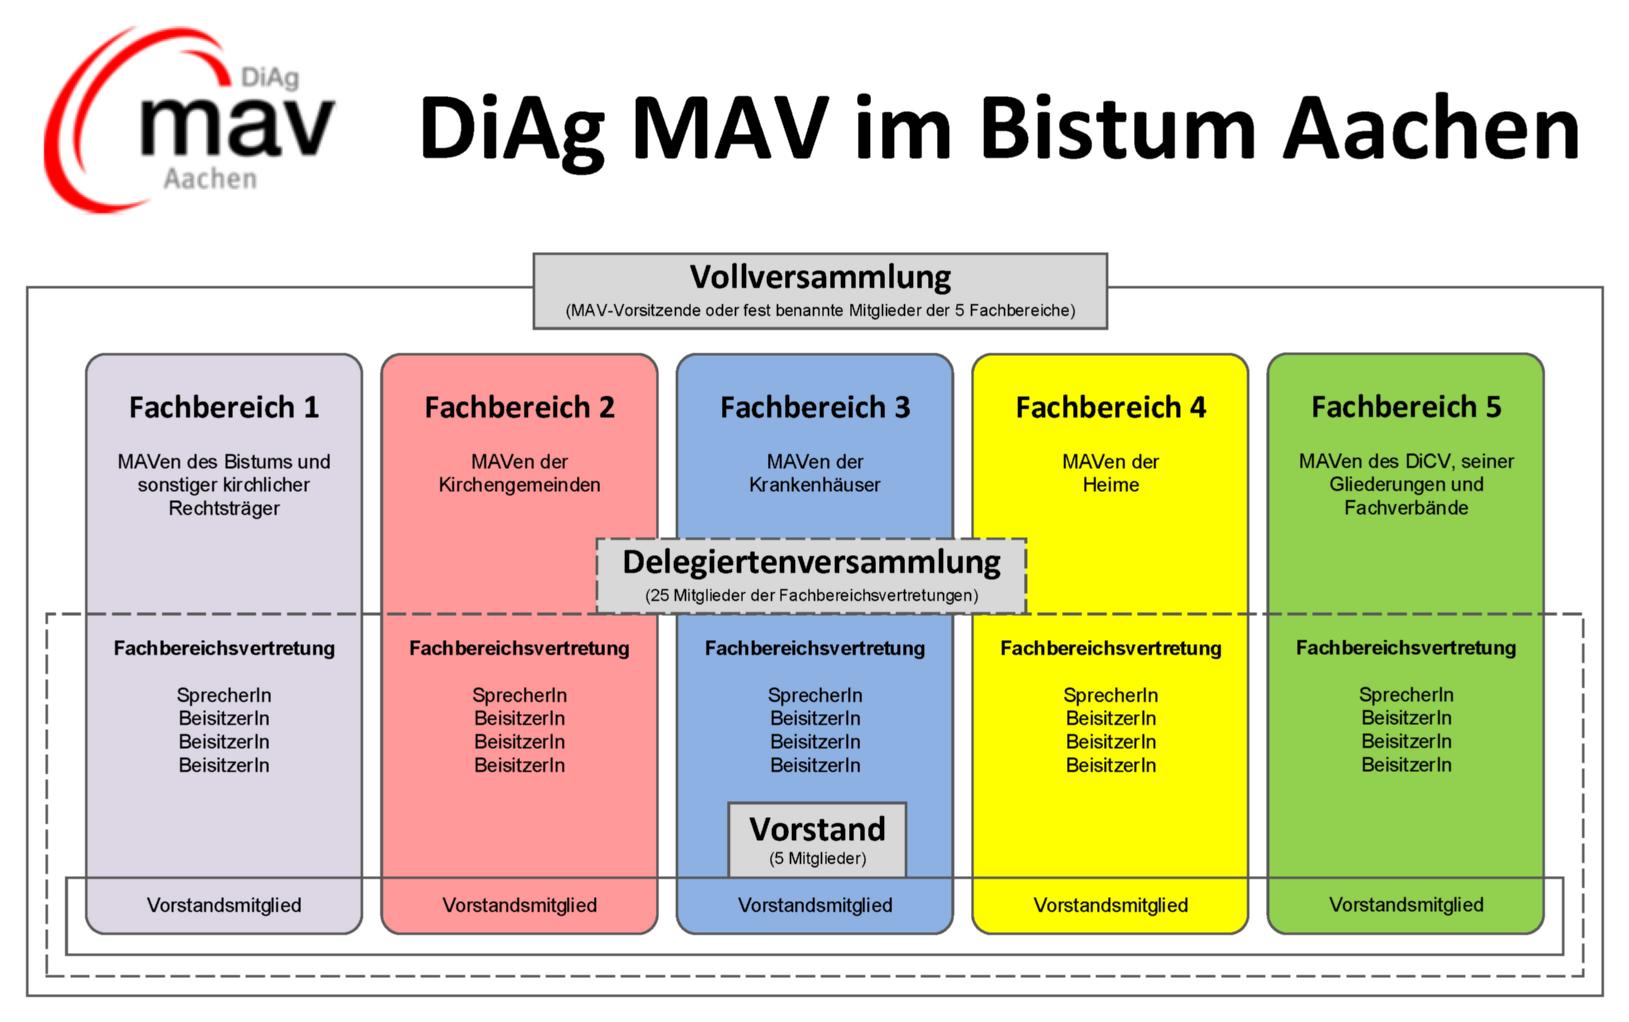 DiAg MAV Aachen Struktur (c) DiAg MAV